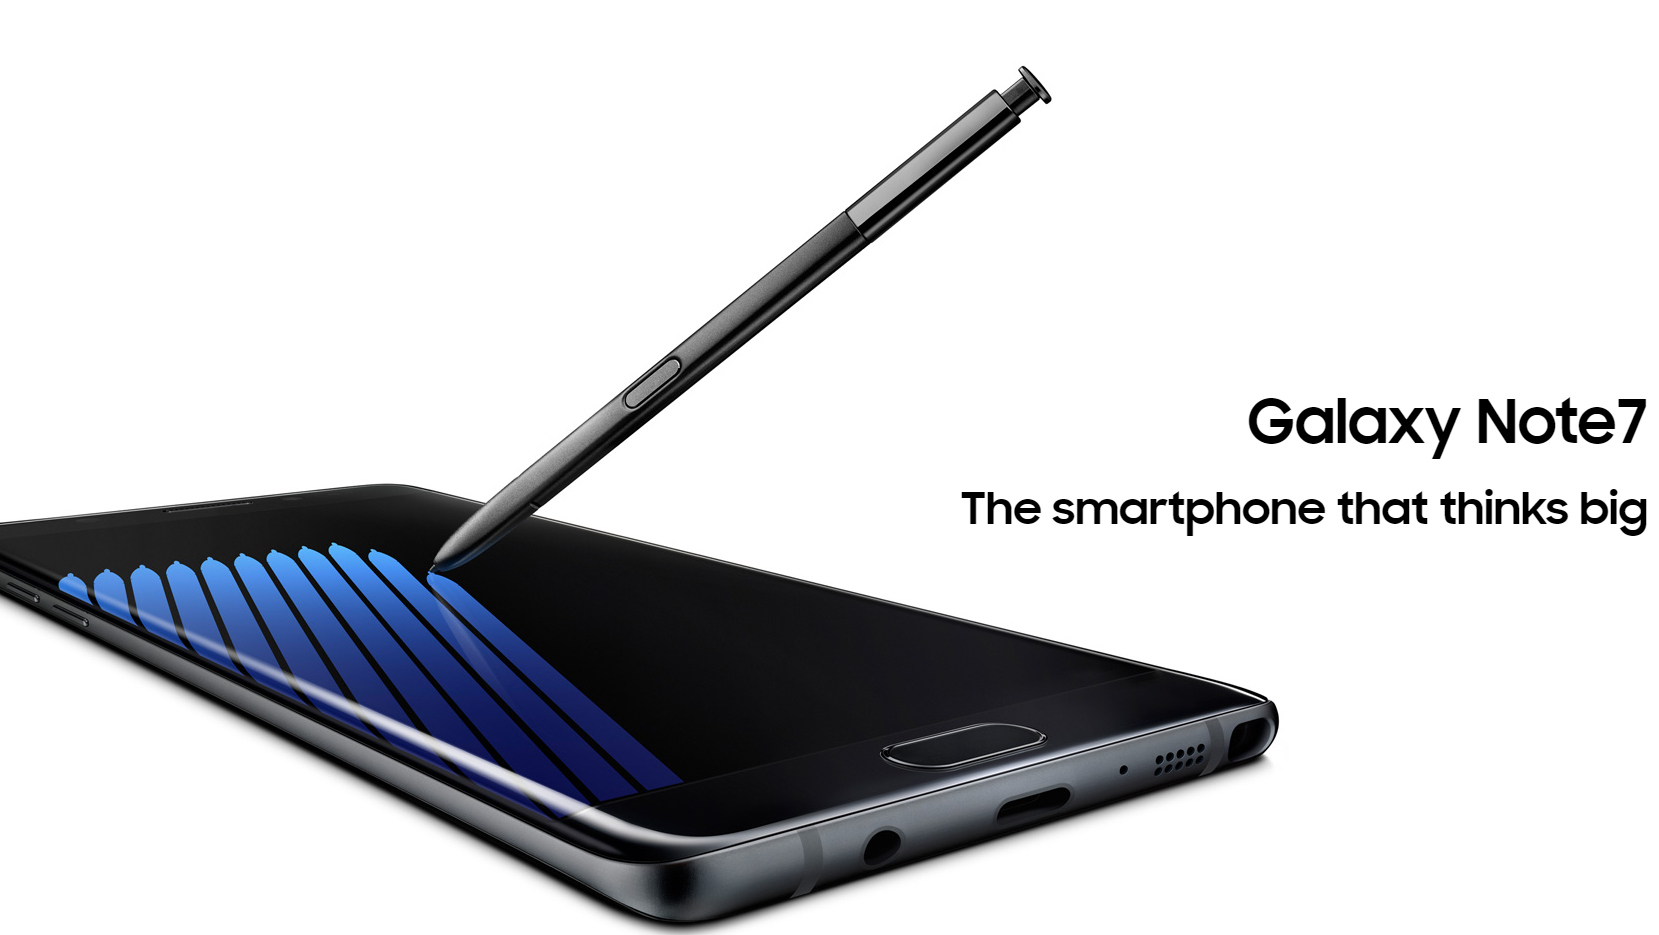 Galaxy Note7 発表! Galaxy Note5/S7 Edgeとスペック比較してみた